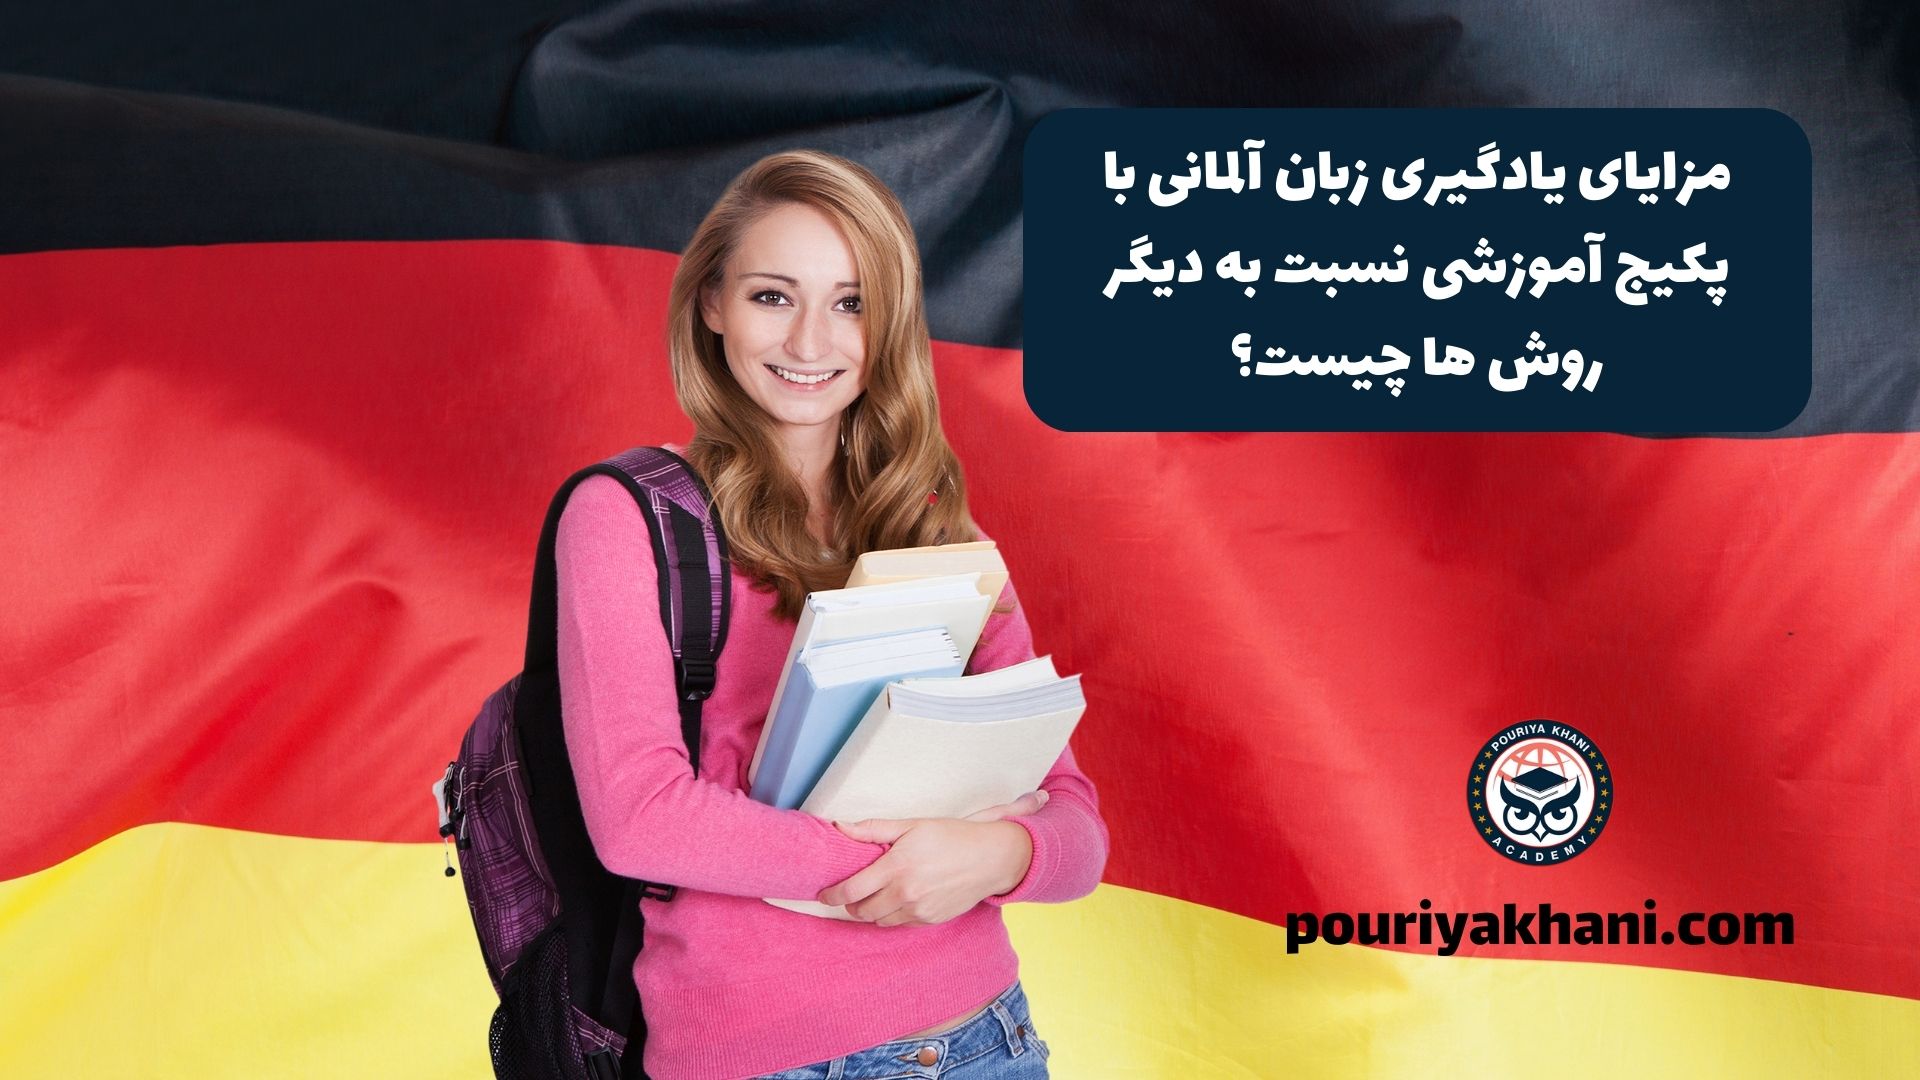 مزایای یادگیری زبان آلمانی با پکیج آموزشی نسبت به دیگر روش ها چیست؟